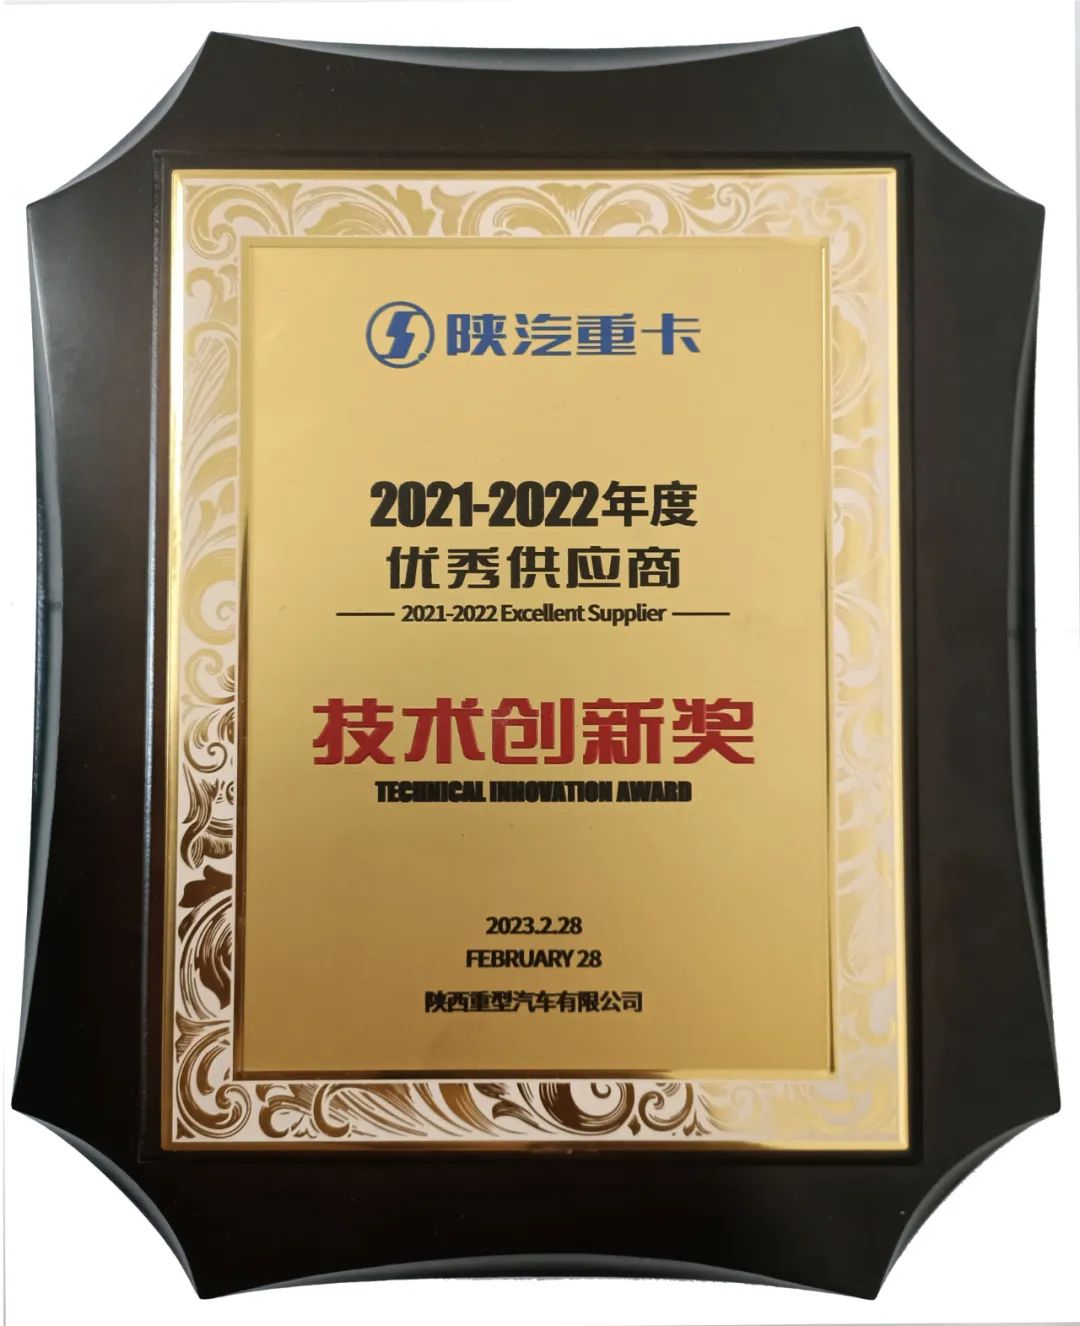 玲珑轮胎荣获陕汽“2021-2022年度优秀供应商技术创新奖”